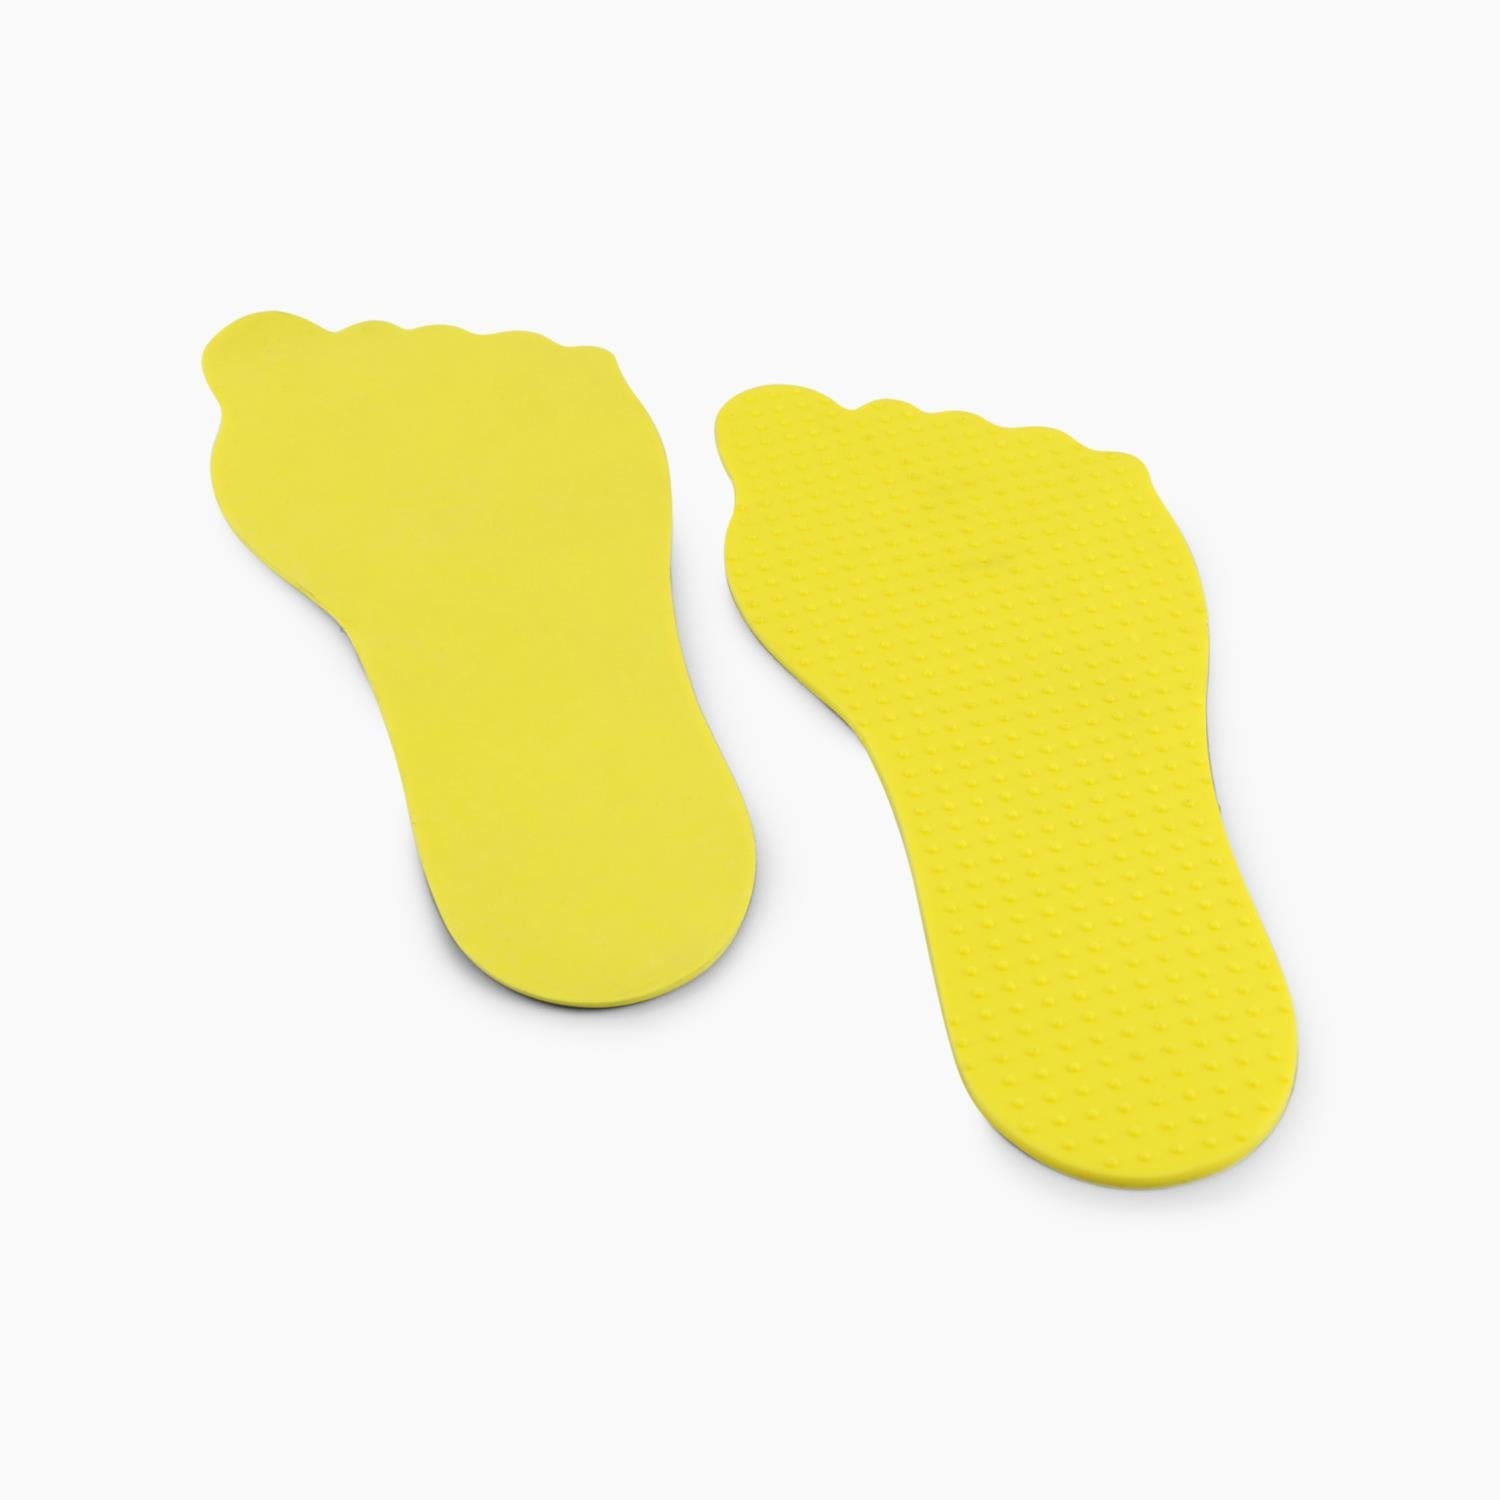 Buy Pair Of Rubber Feet-Splay (UK) Limited-Splay UK Online